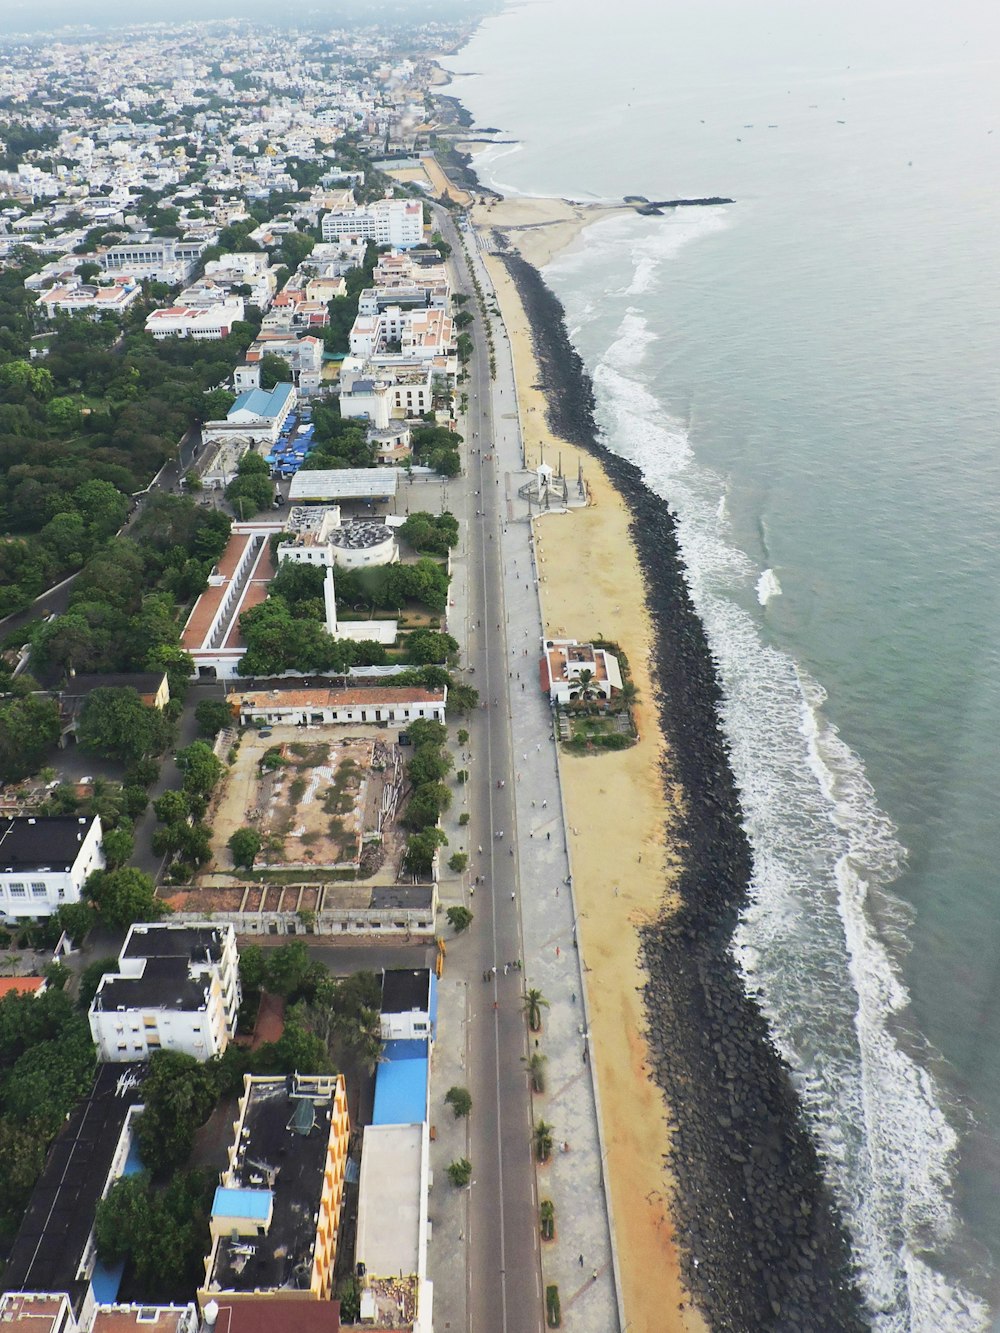 Luftaufnahme eines Strandes und einer Stadt